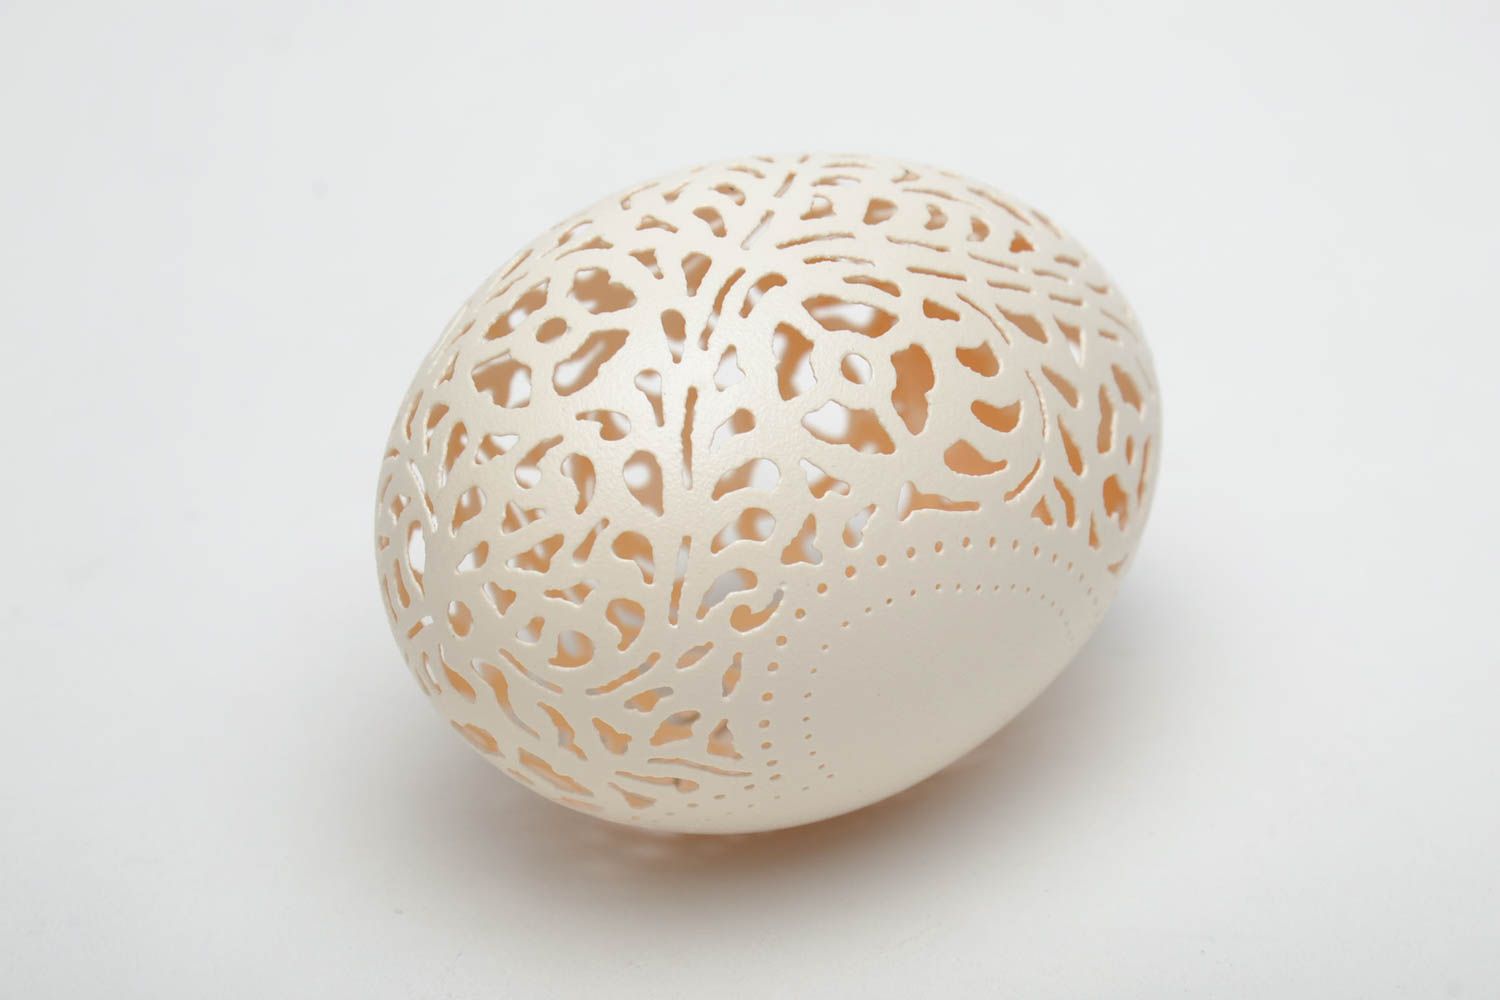 Гусиное яйцо с гравировкой ажурное фото 4